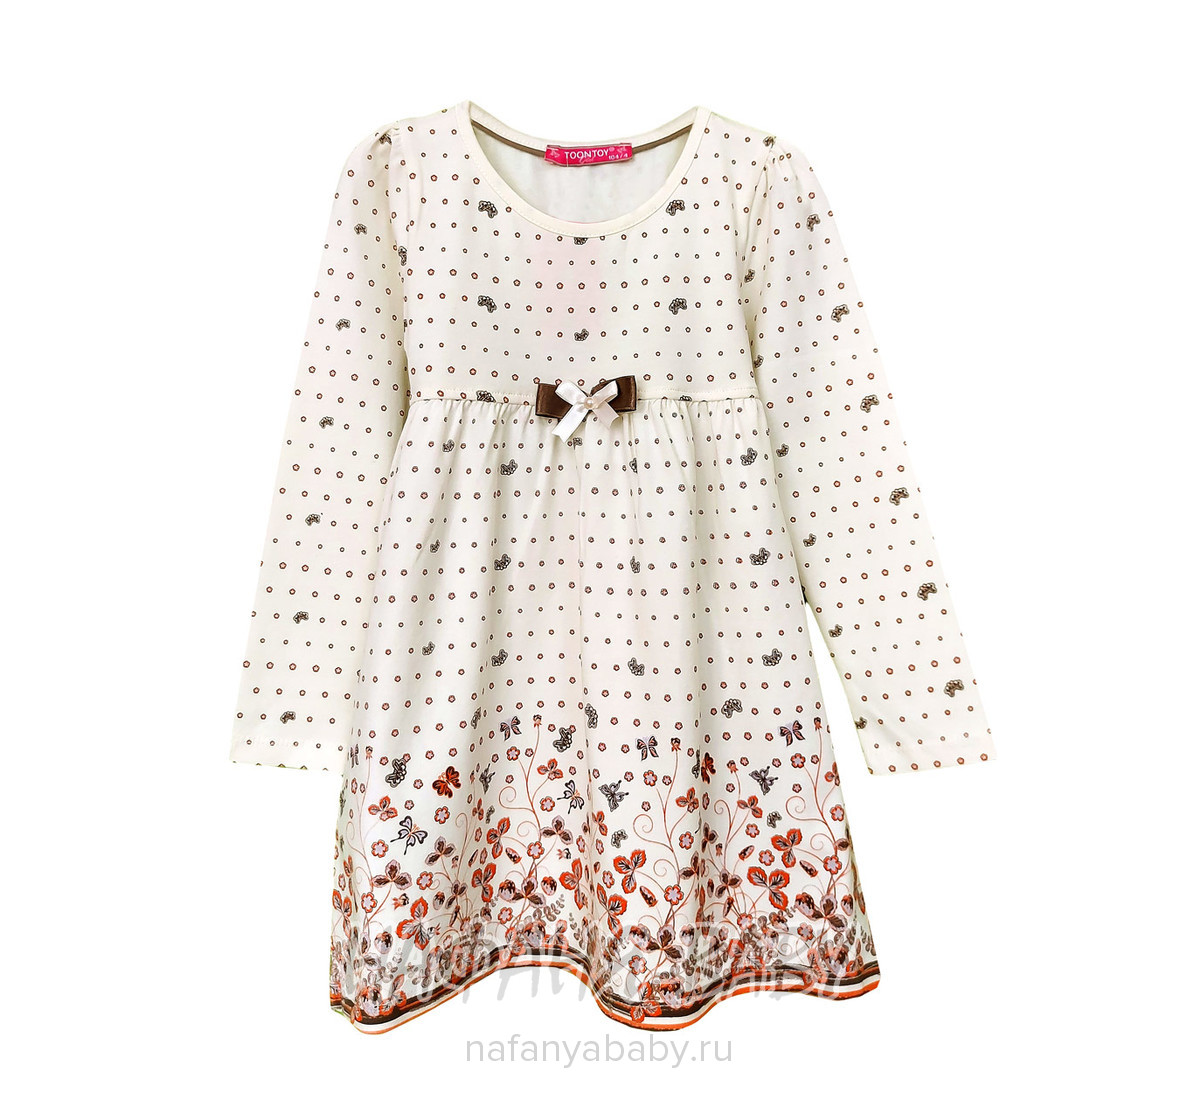 Детское трикотажное платье  TOONTOY, купить в интернет магазине Нафаня. арт: 7712.